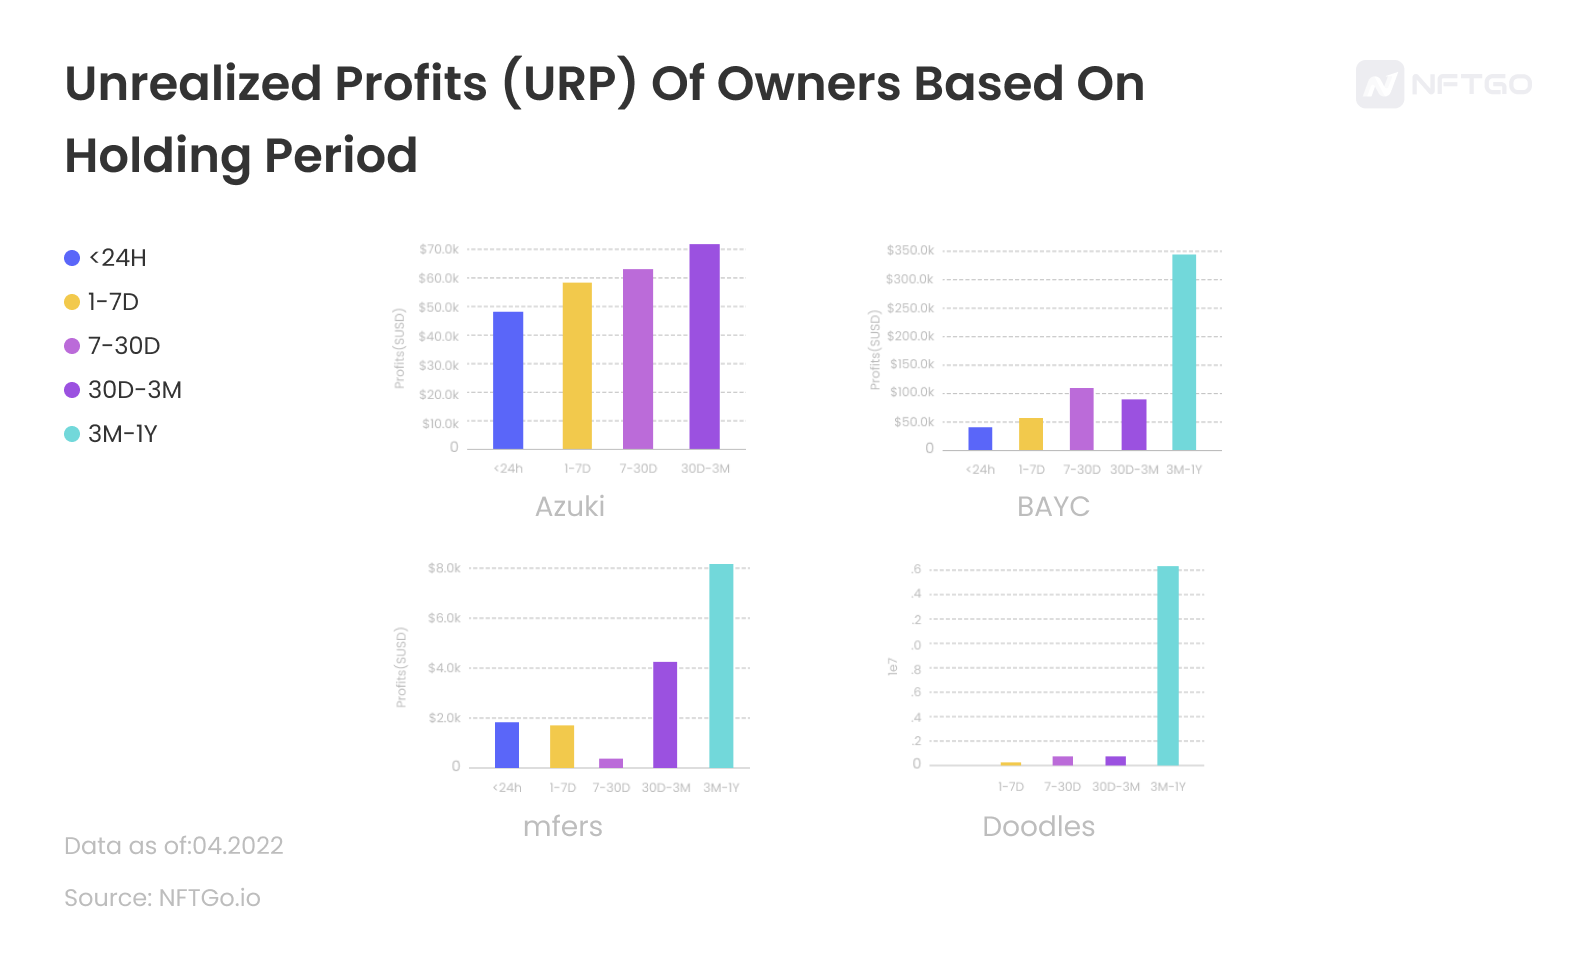 Average Unrealized Profits (URP) Of Owners Based On Holding Period; Data source: NFTGo.io